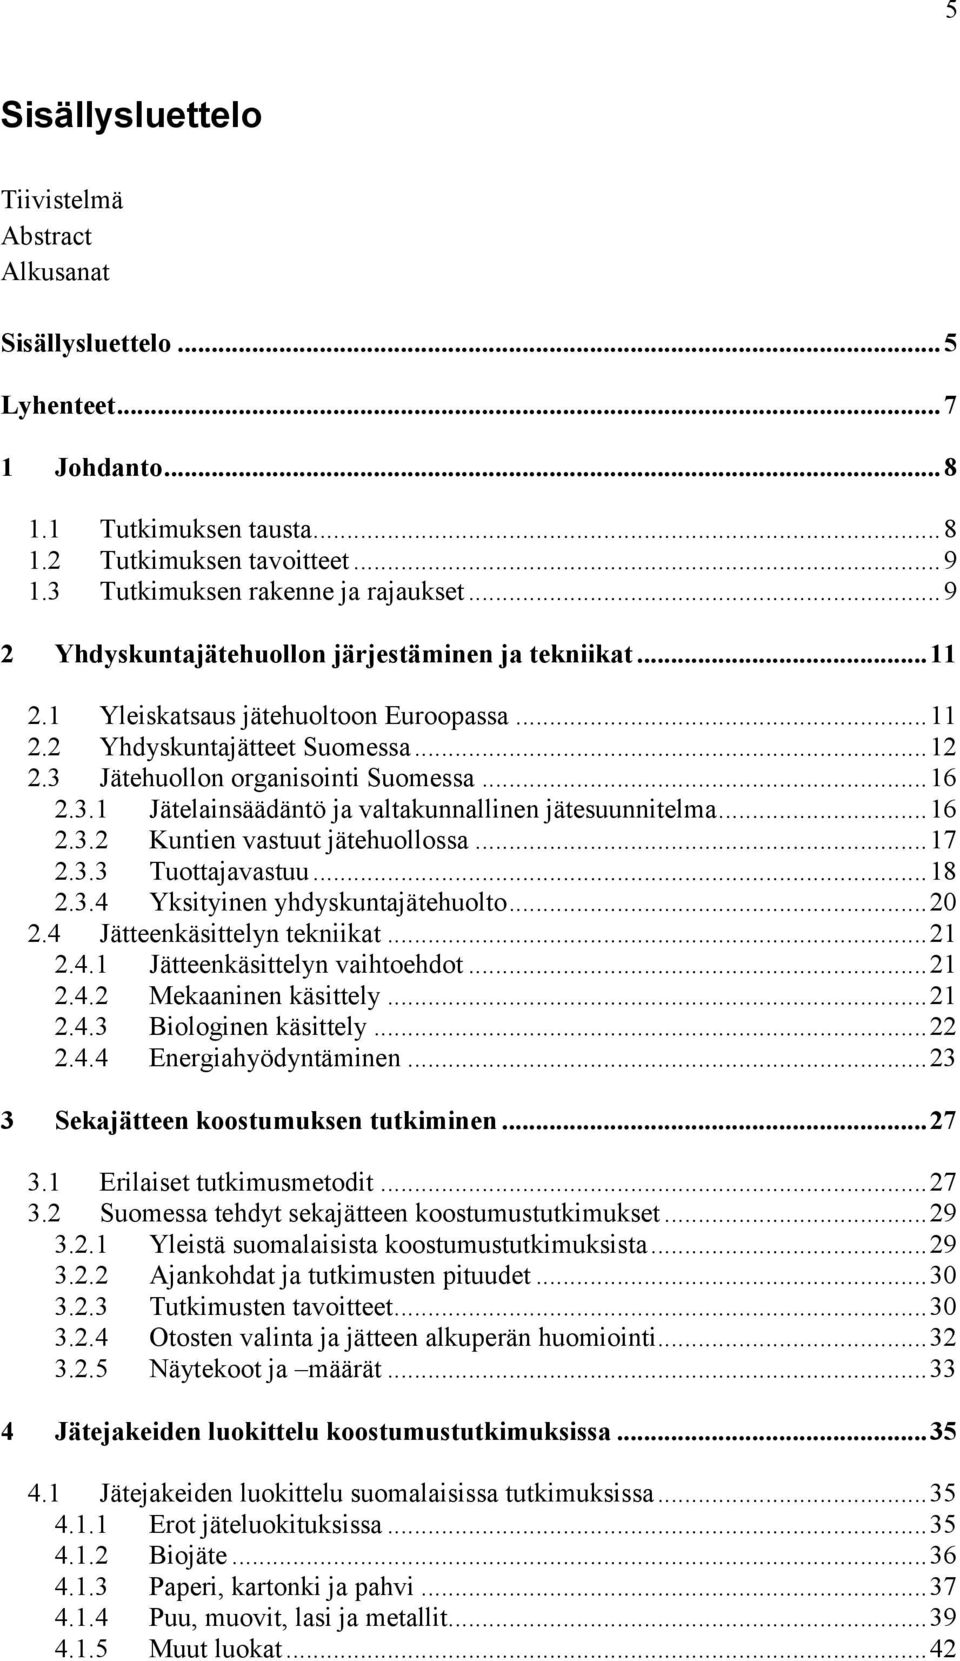 Jätehuollon organisointi Suomessa... 16 2.3.1 Jätelainsäädäntö ja valtakunnallinen jätesuunnitelma... 16 2.3.2 Kuntien vastuut jätehuollossa... 17 2.3.3 Tuottajavastuu... 18 2.3.4 Yksityinen yhdyskuntajätehuolto.